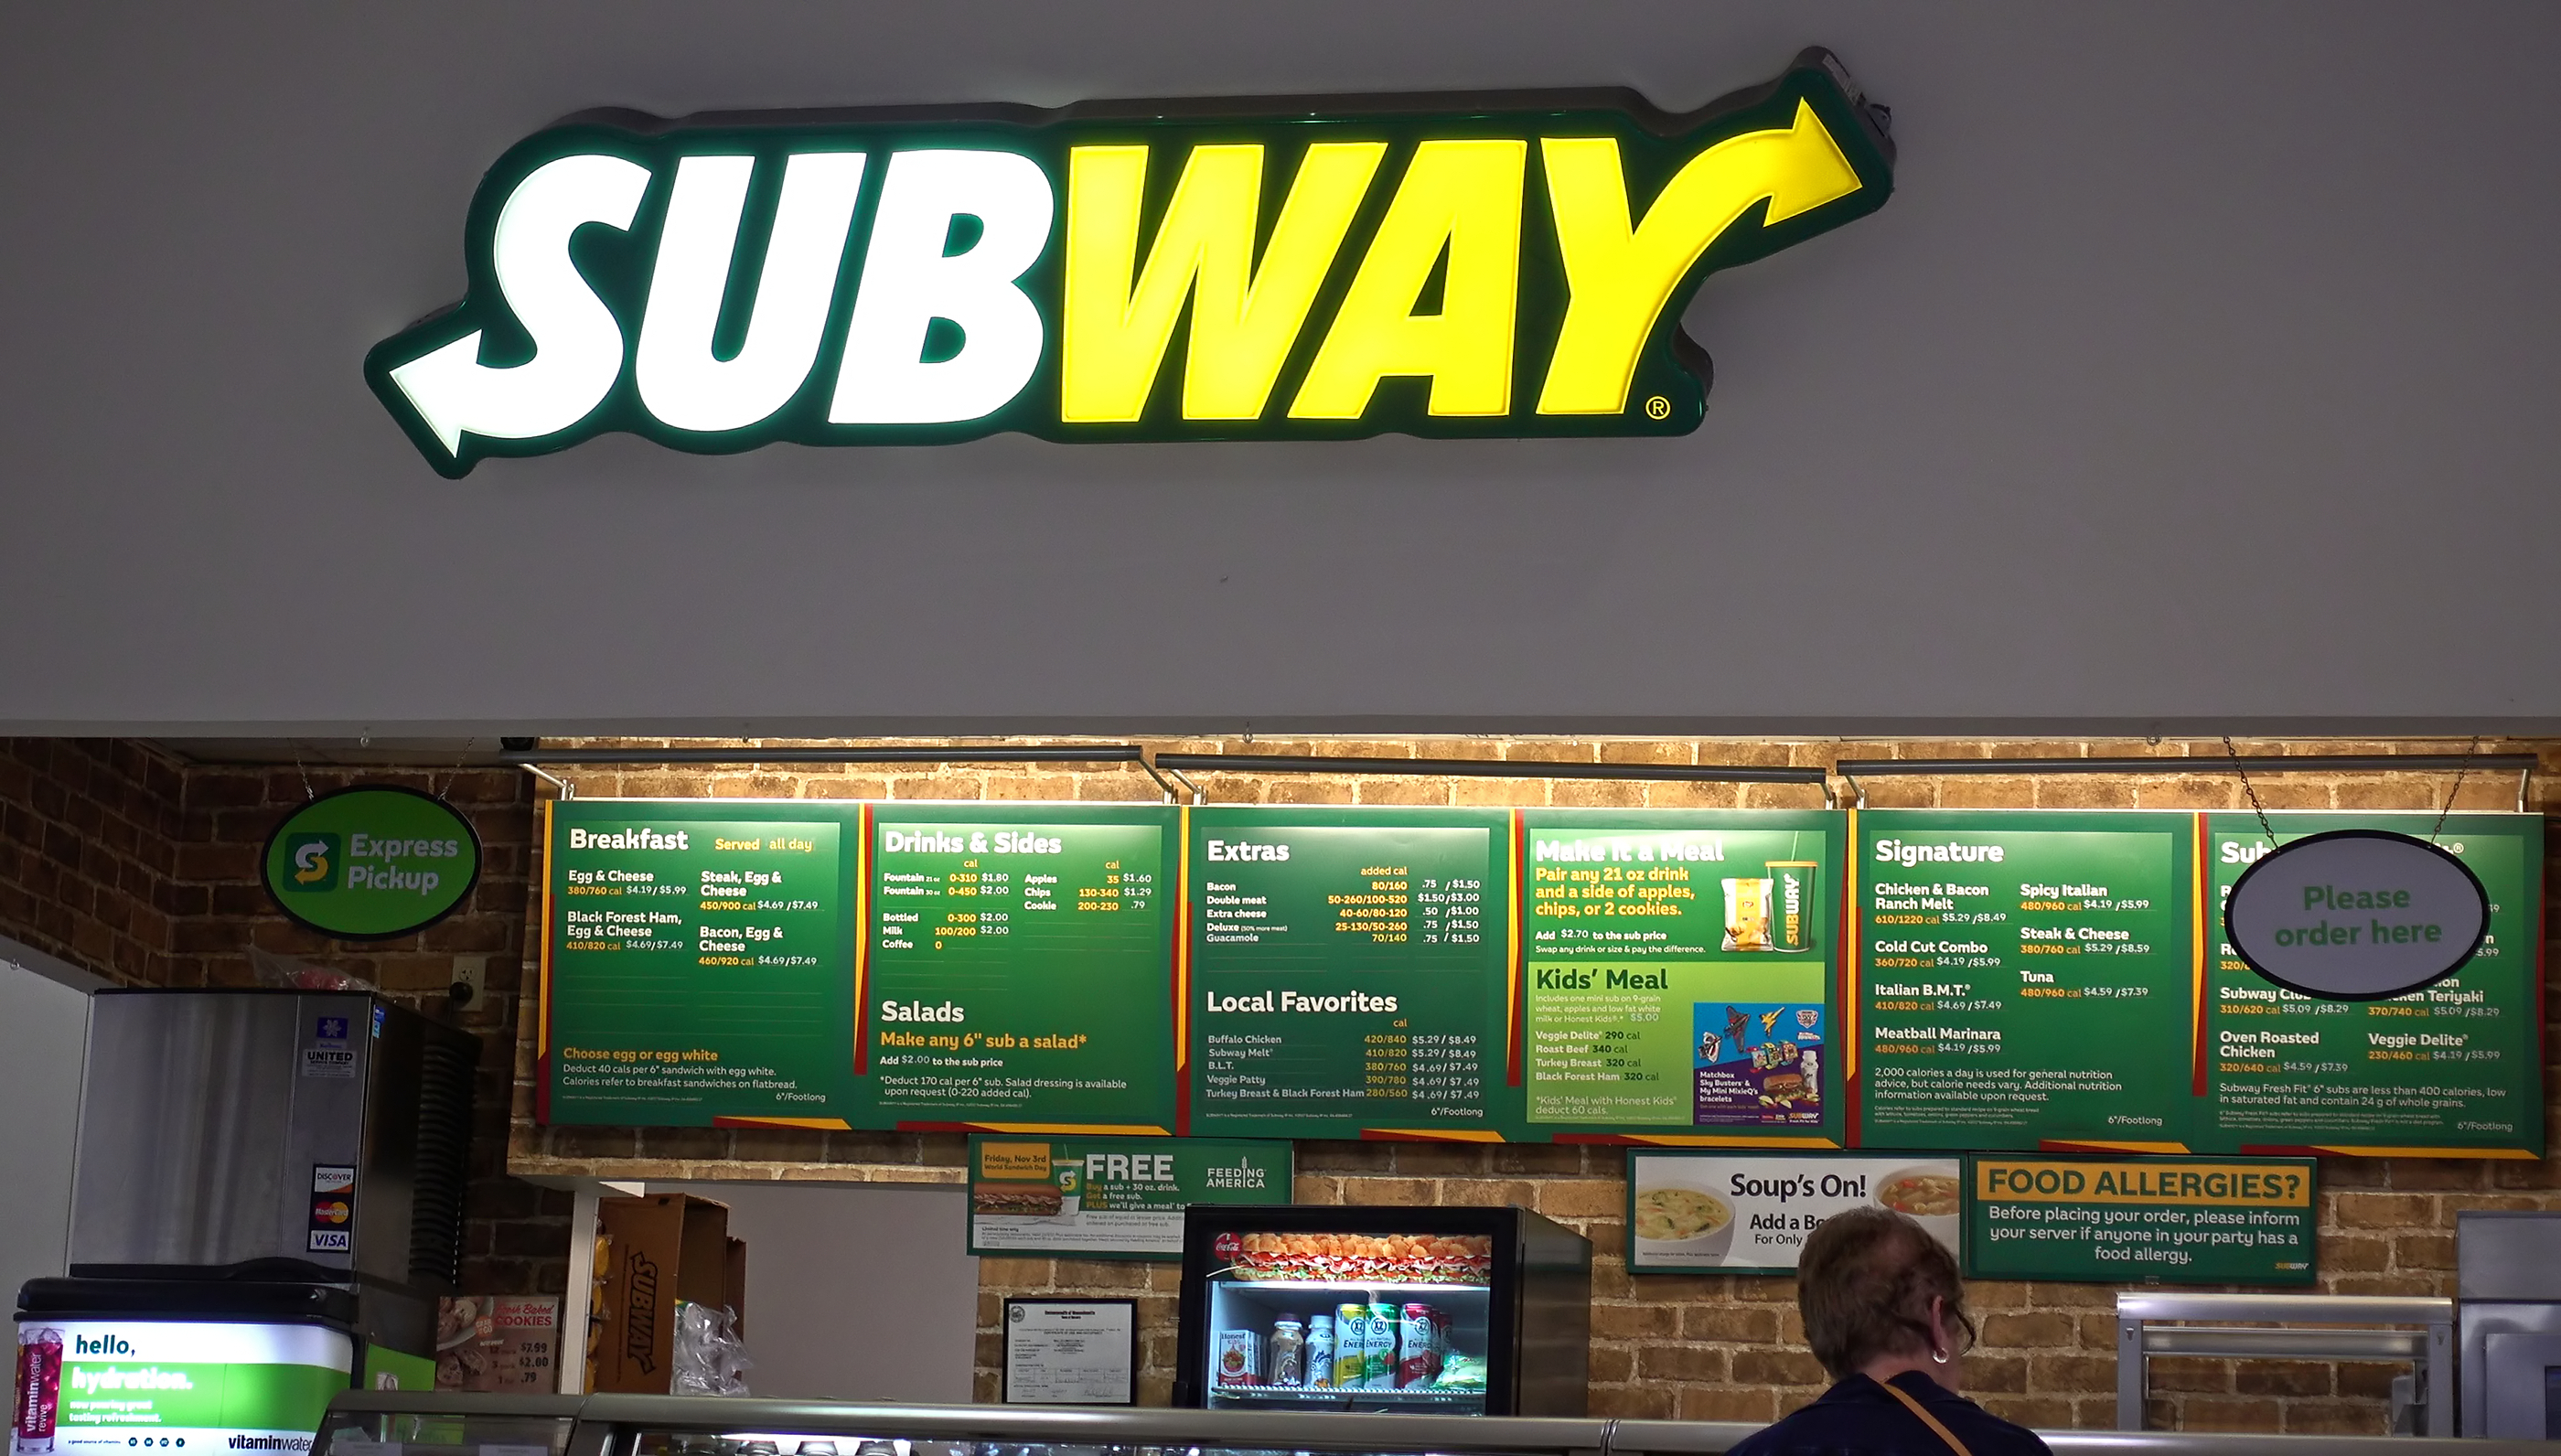 10 mil pessoas trocam seus nomes para 'Subway' em promoção nos EUA